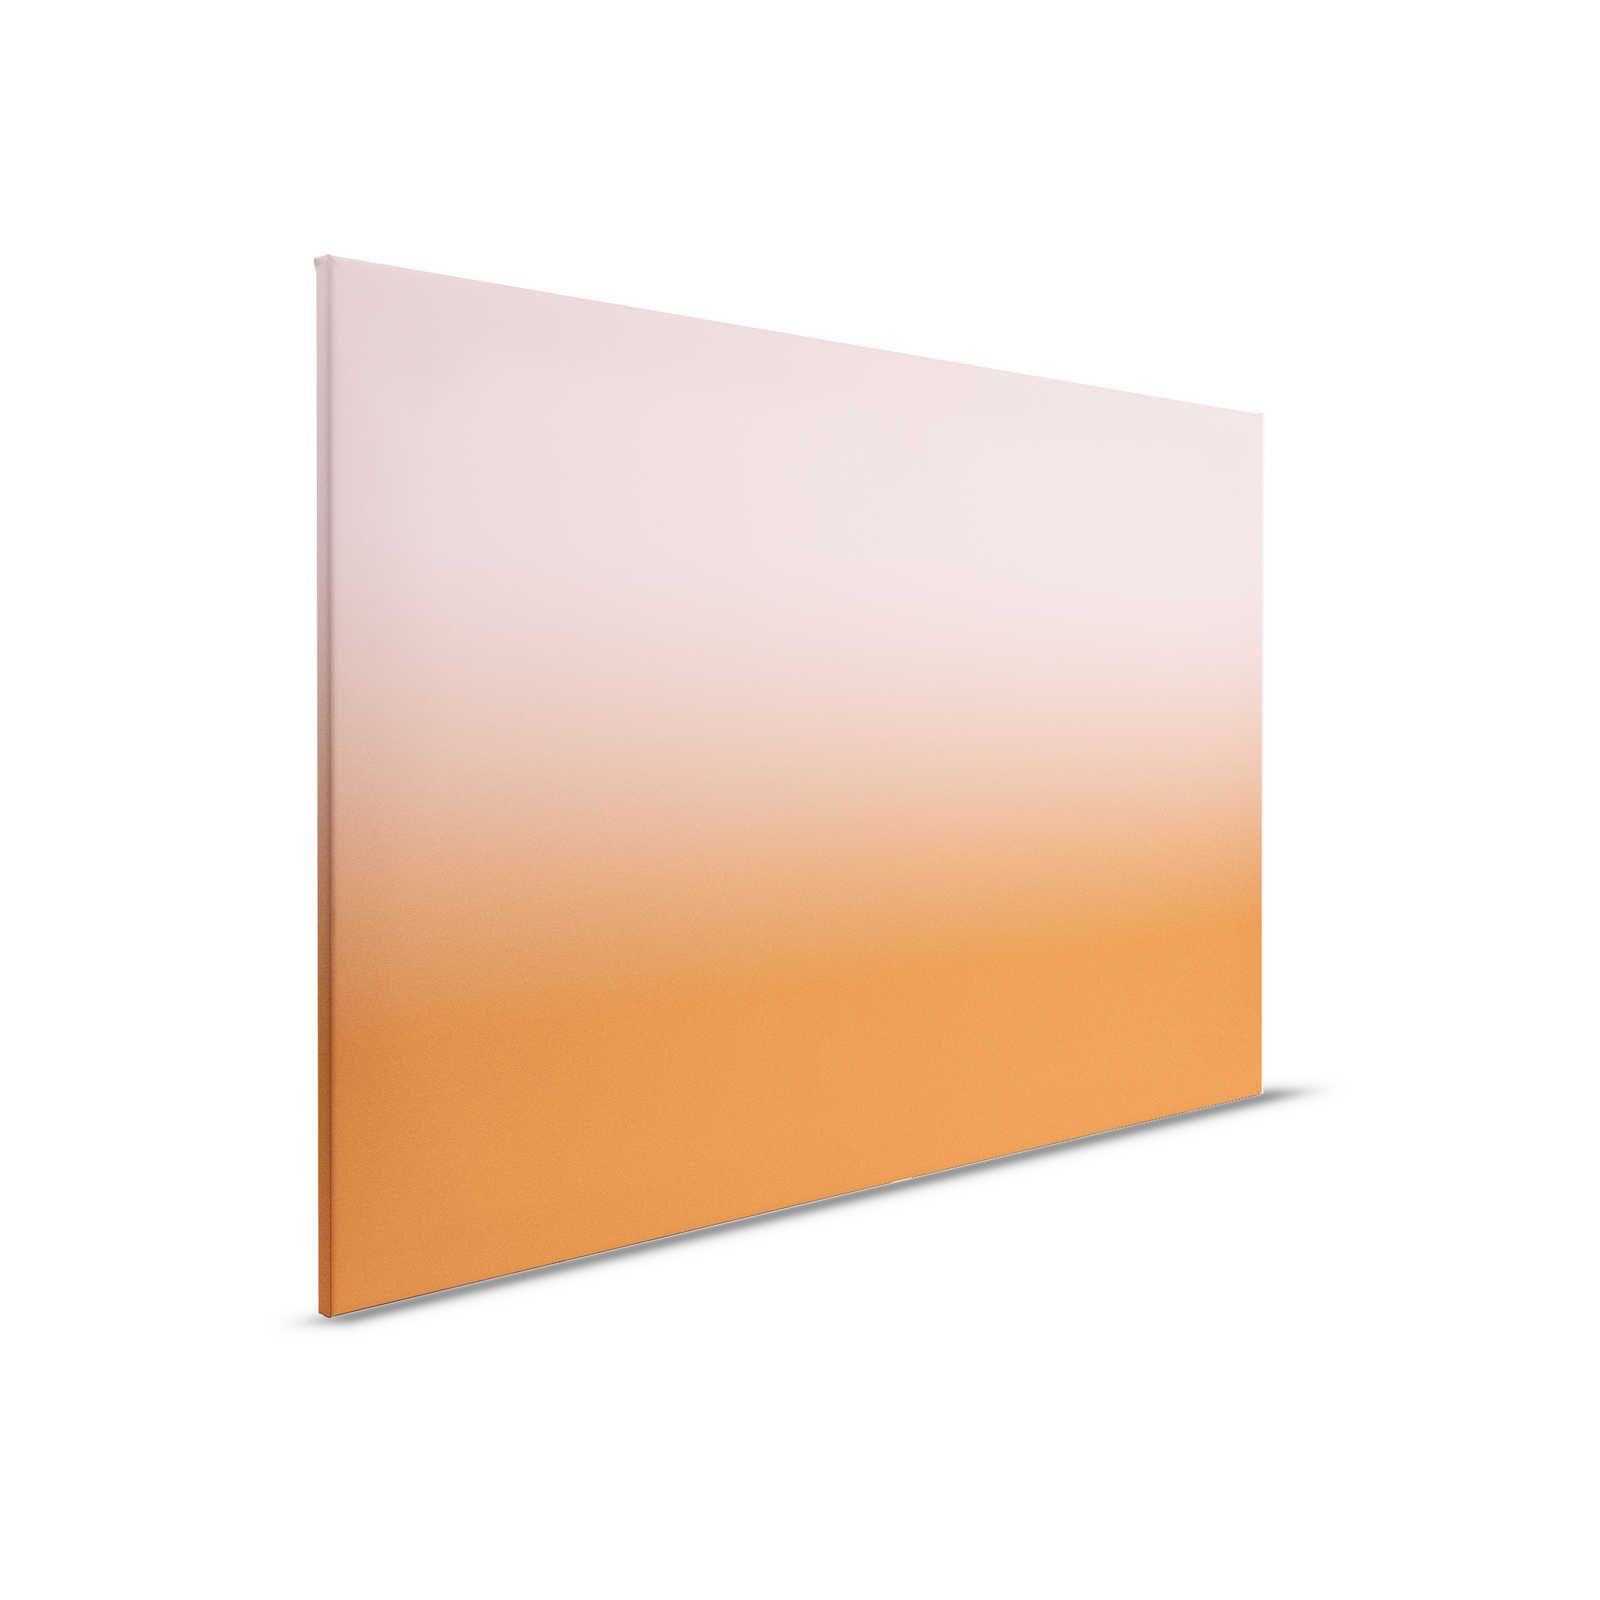         Colour Studio 4 - Ombre Canvas Painting Gradient Pink & Orange - 0.90 m x 0.60 m
    